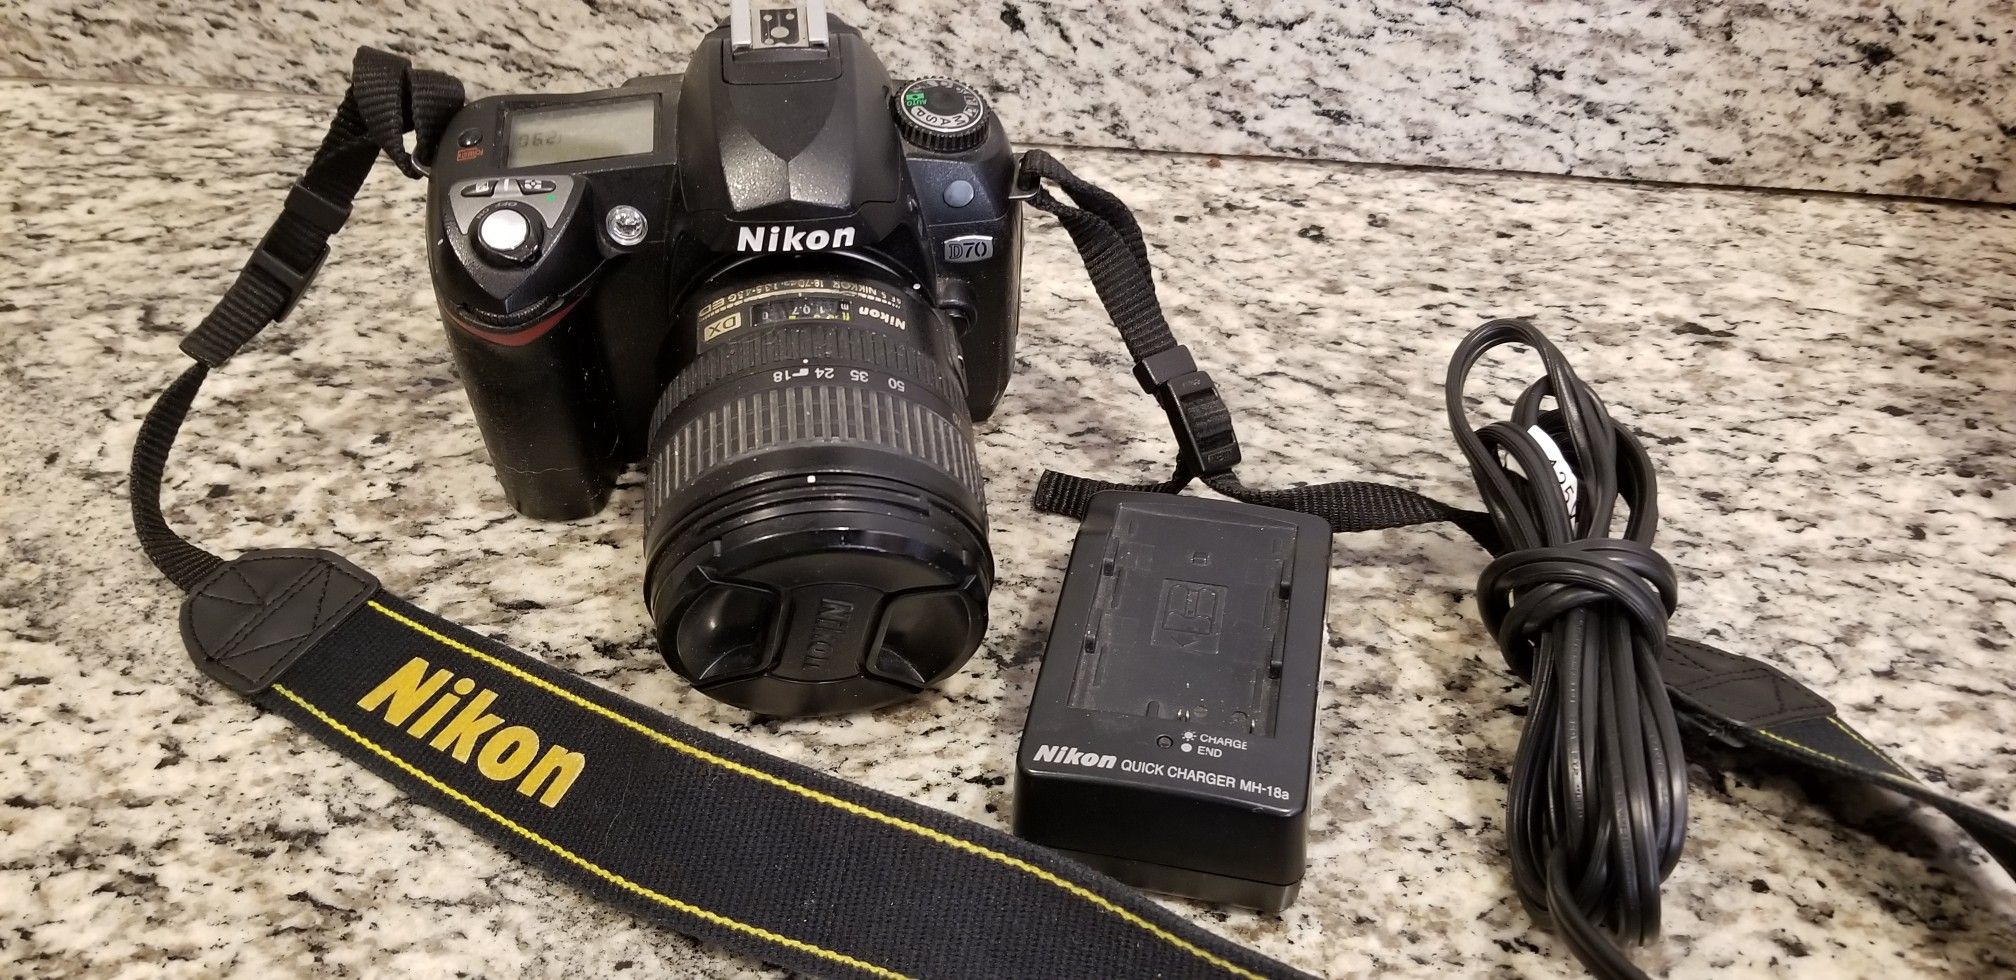 Nikon D70 Digital SLR Camera & AF-S Nikkor DX 18-70mm 3.5-4.5G ED Lens